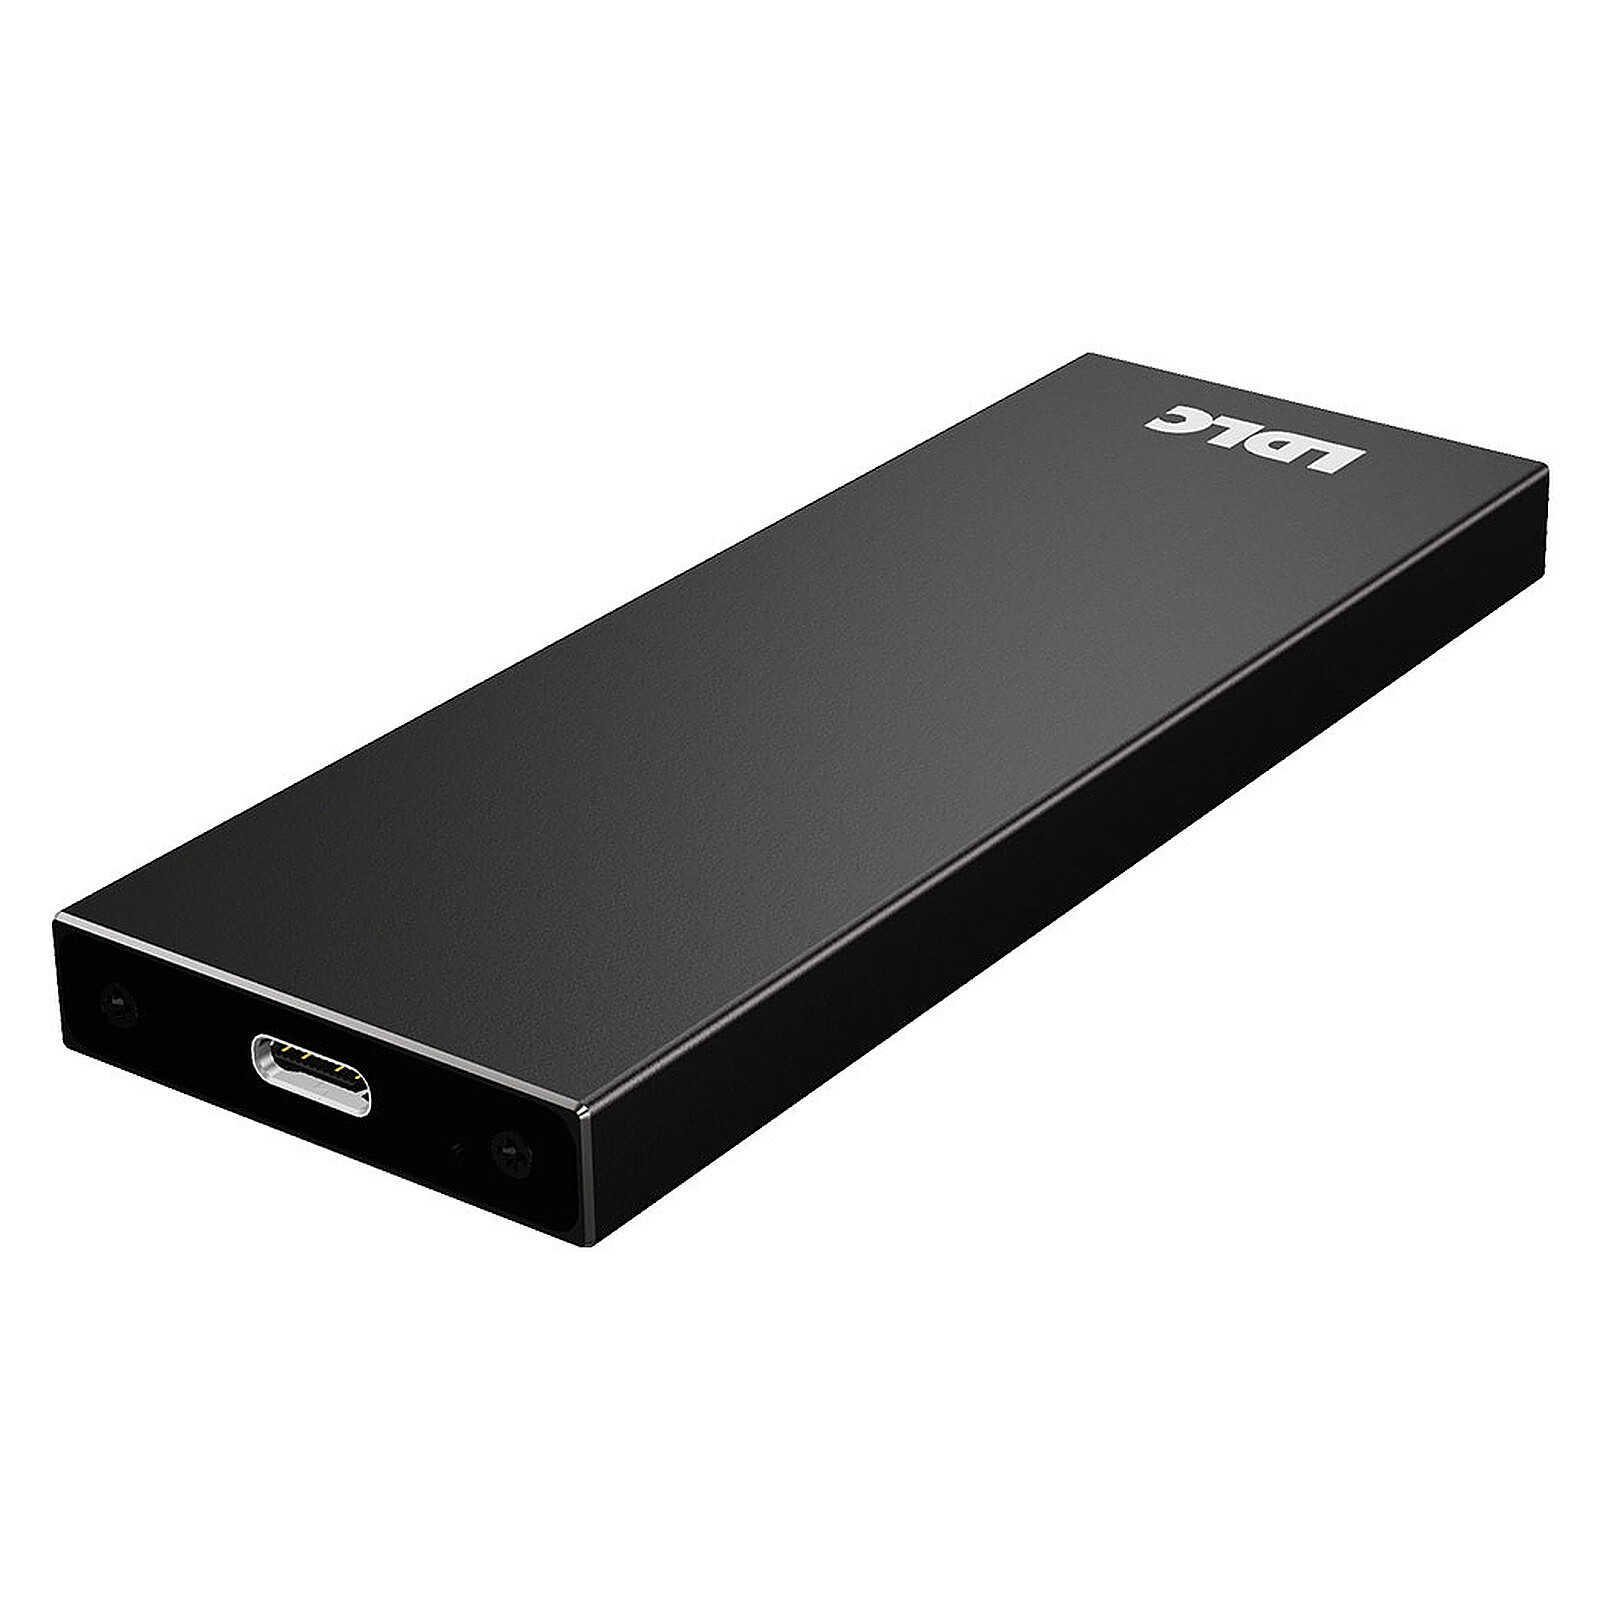 LDLC SSD Externe USB 3.1 960 Go - Disque dur externe - Garantie 3